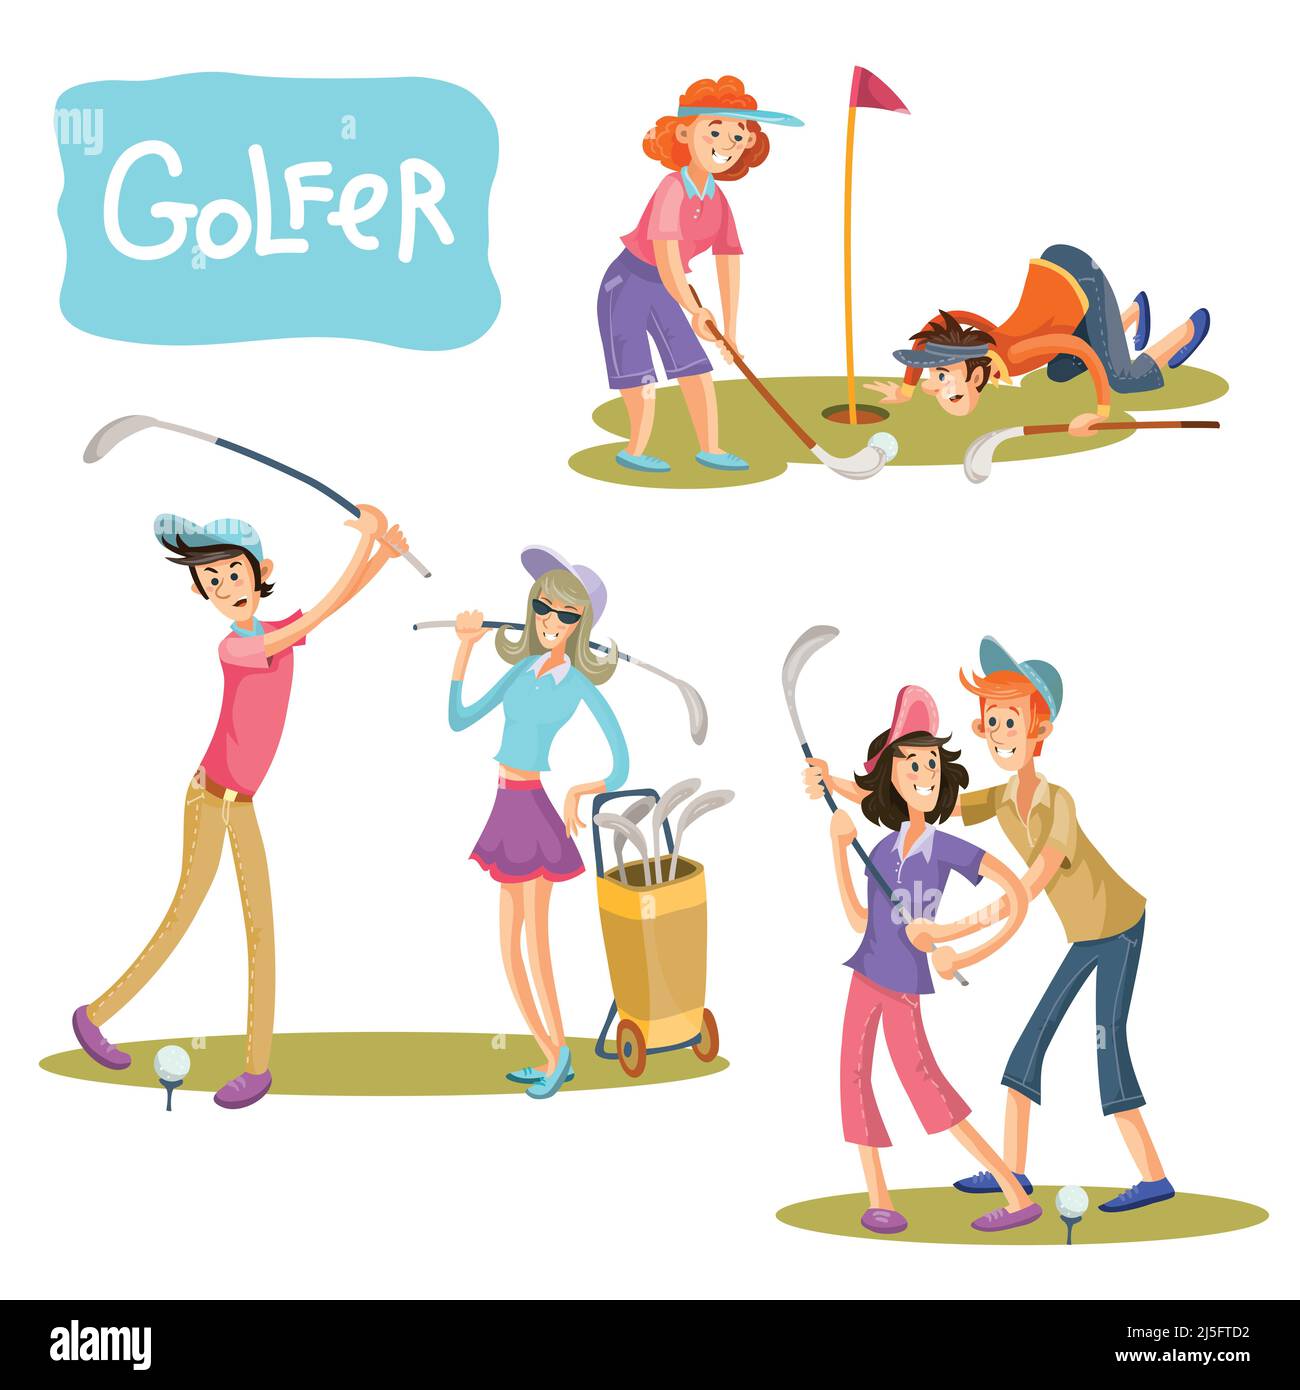 Set von Vektor-Illustrationen von Golfspielen. Ein Mann und ein Mädchen auf einem Spielfeld mit Stöcken für einen Golfspieler im Cartoon-Stil isoliert auf weißem Rücken Stock Vektor